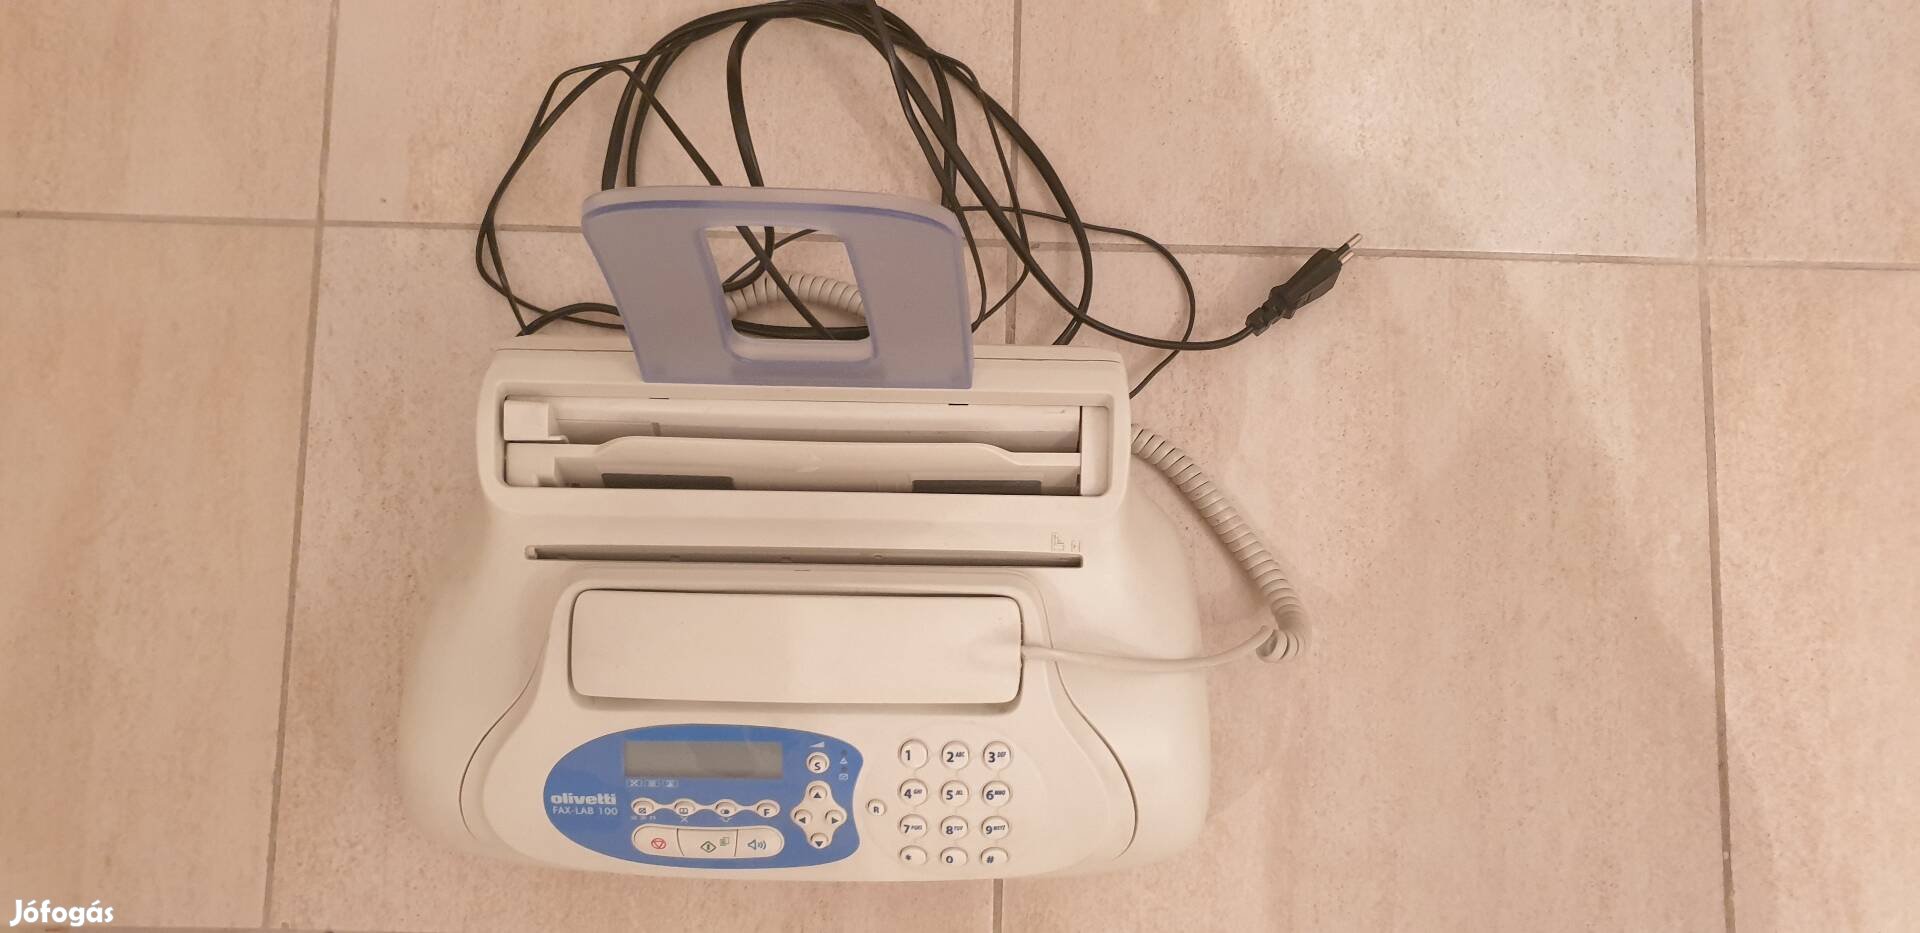 Olivetti Fax-Lab 100 fax+telefon